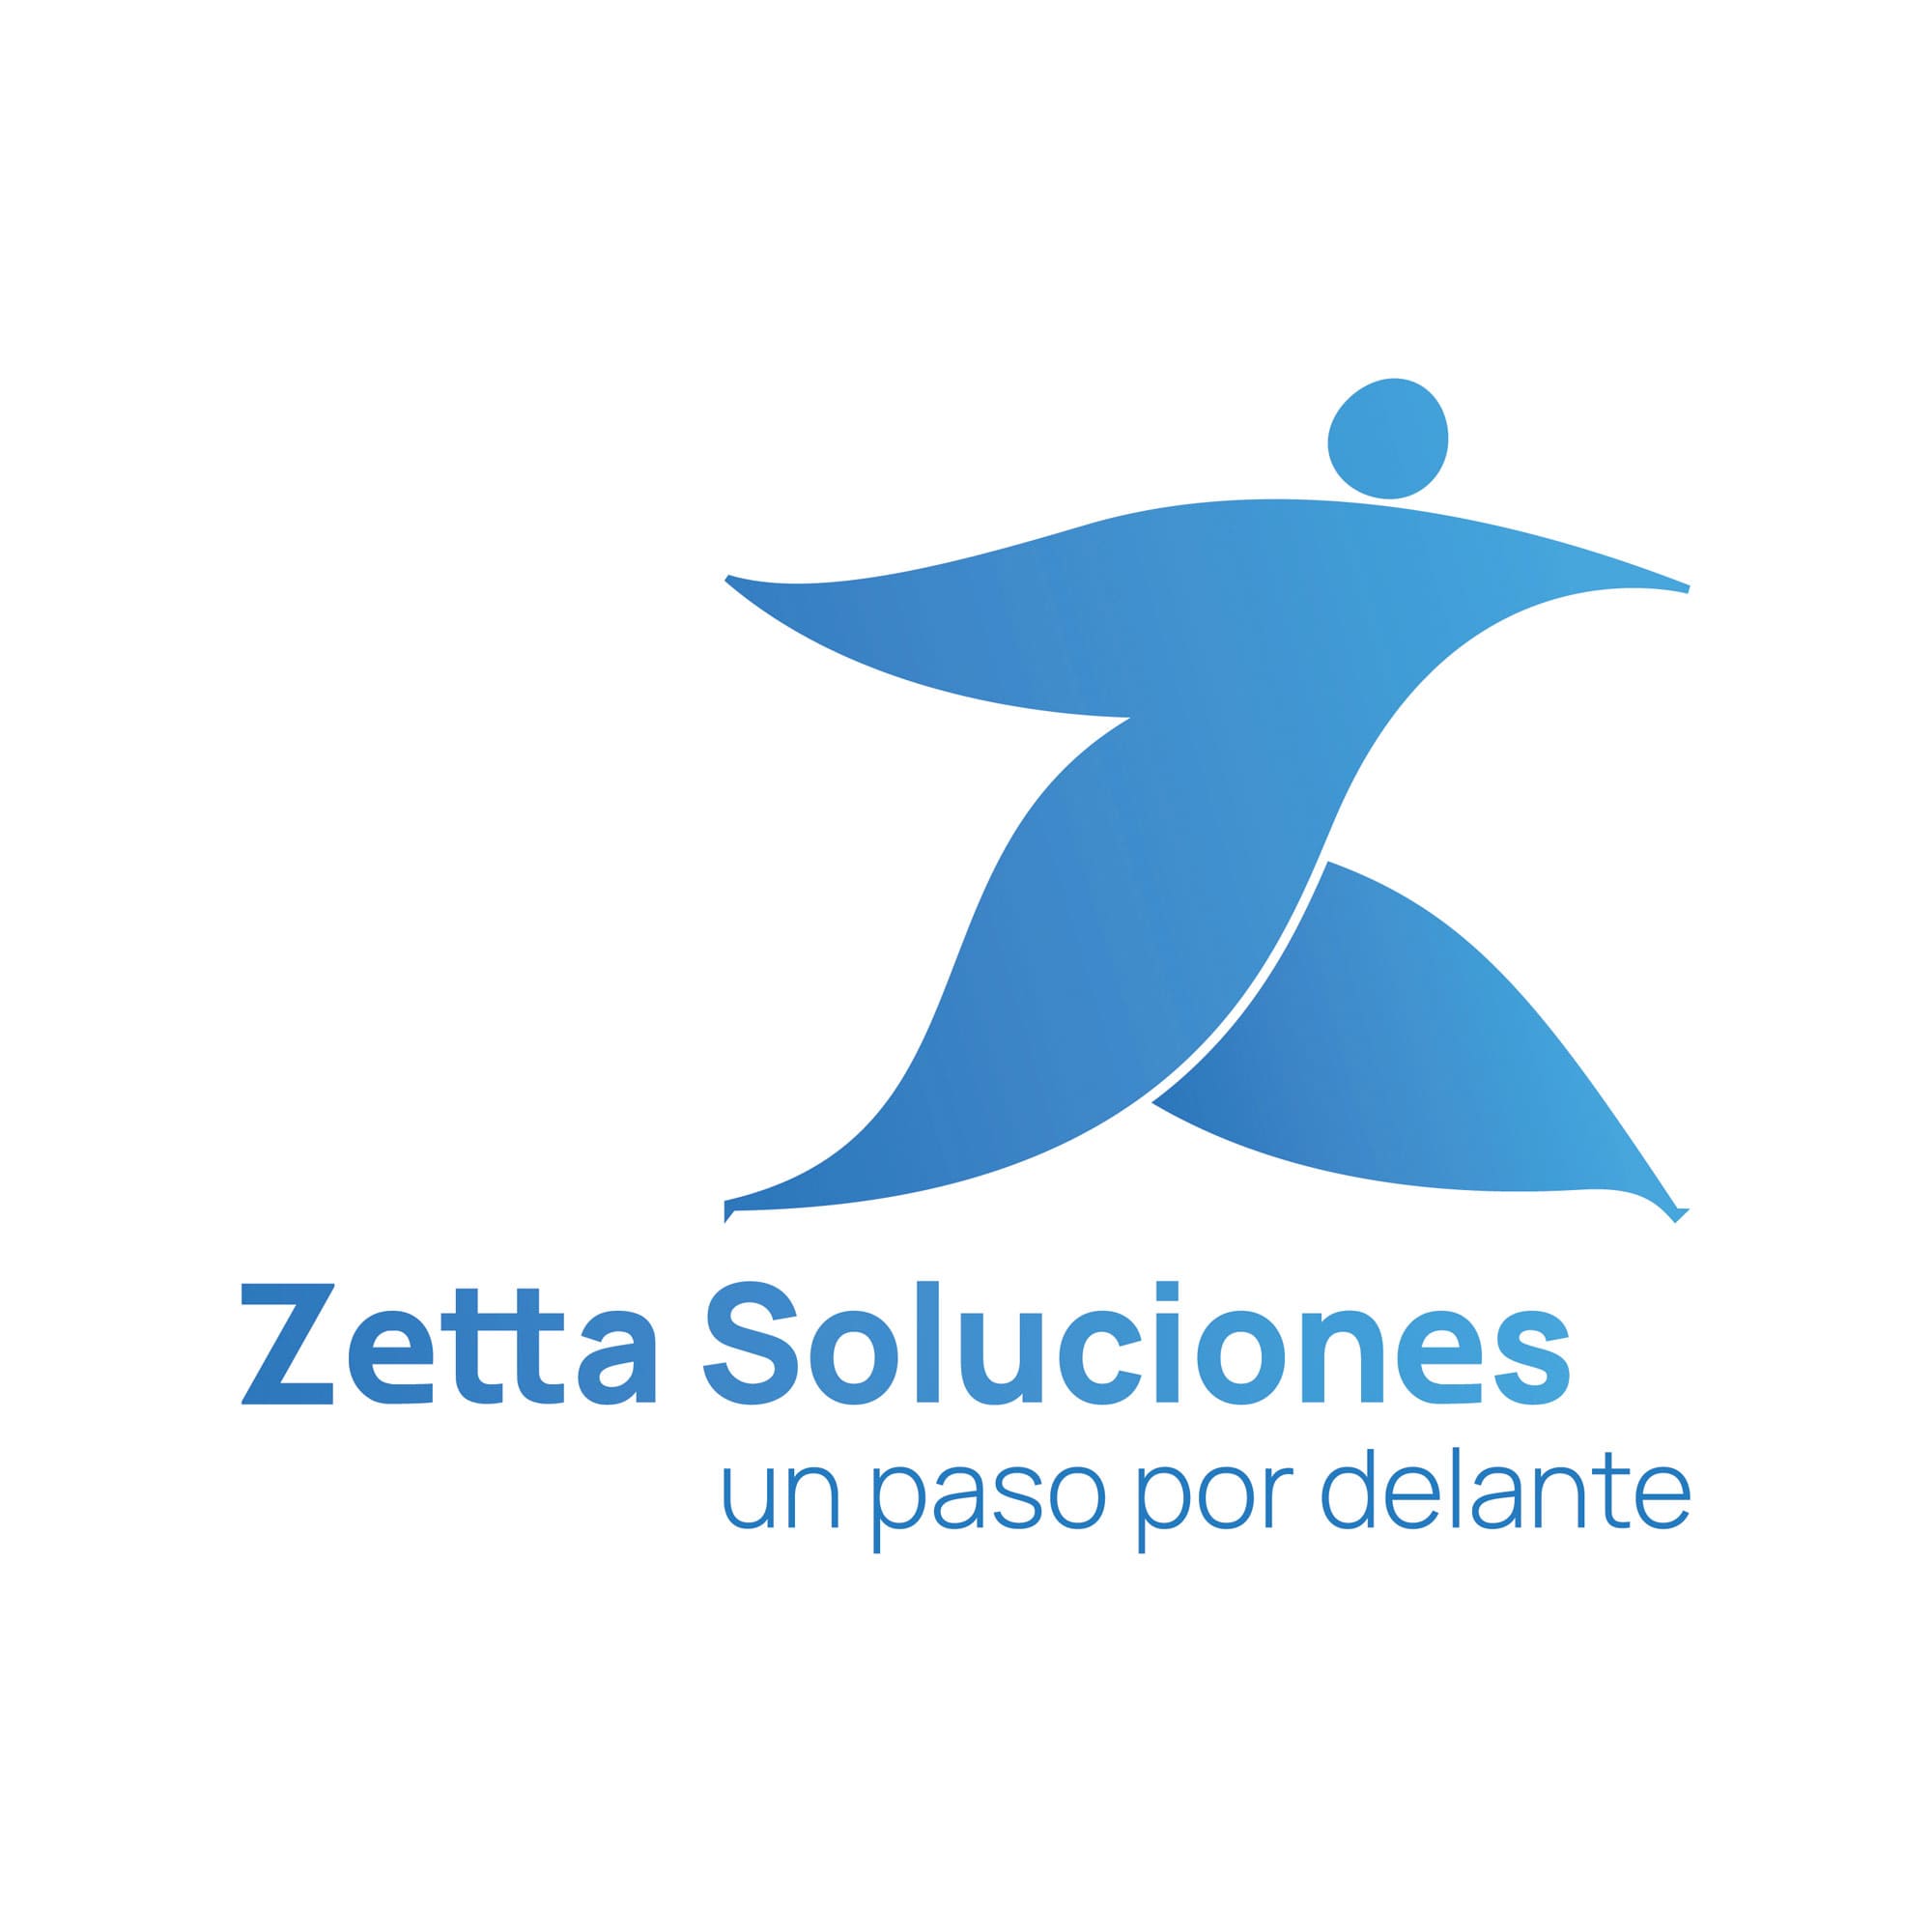 Logotipo de Zetta Soluciones, empresa de desarrollo de software.